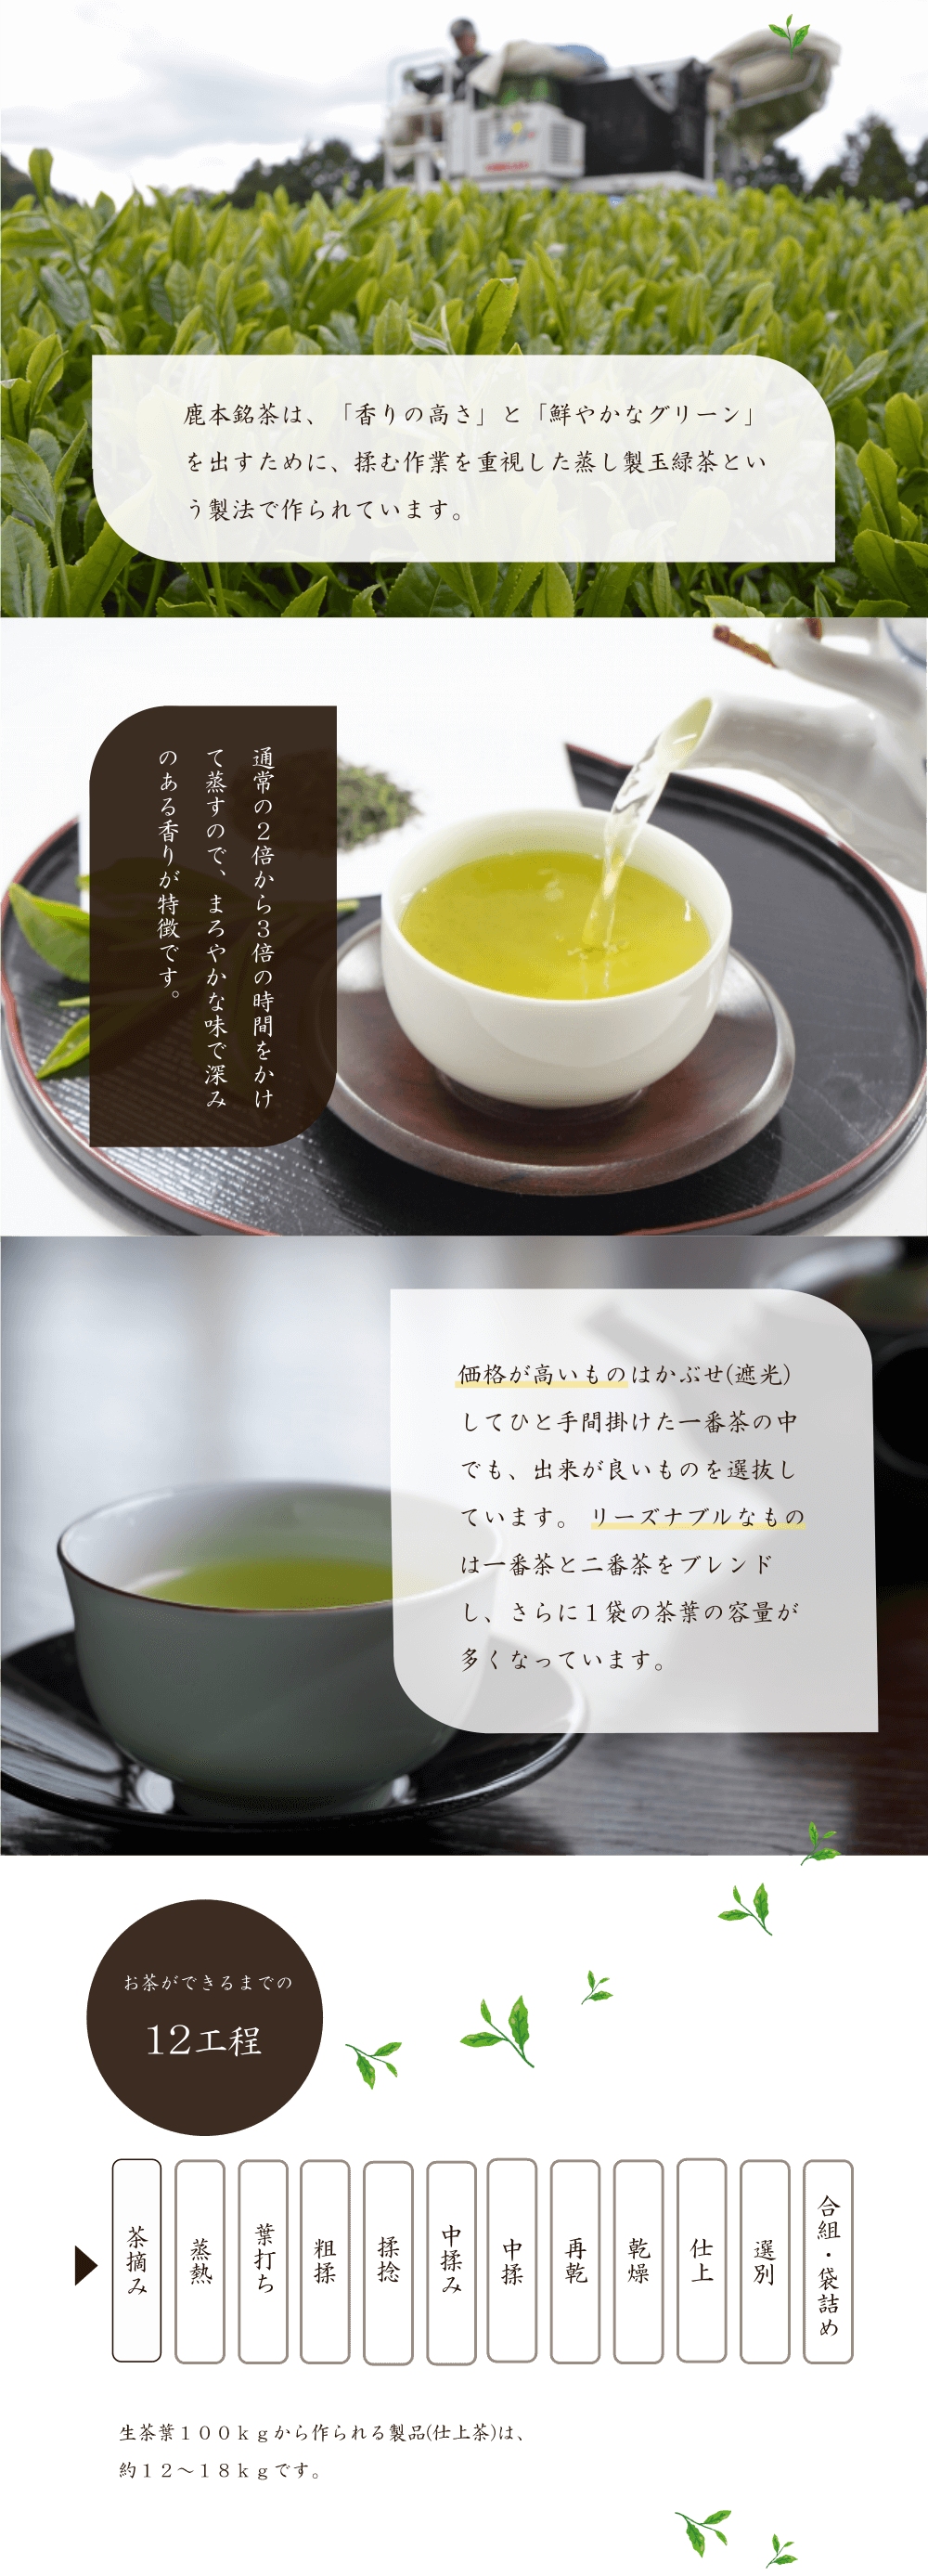 「香りの高さ」と「鮮やかなグリーン」を出すために、揉む作業を重視した蒸し製玉緑茶という製法で作られています